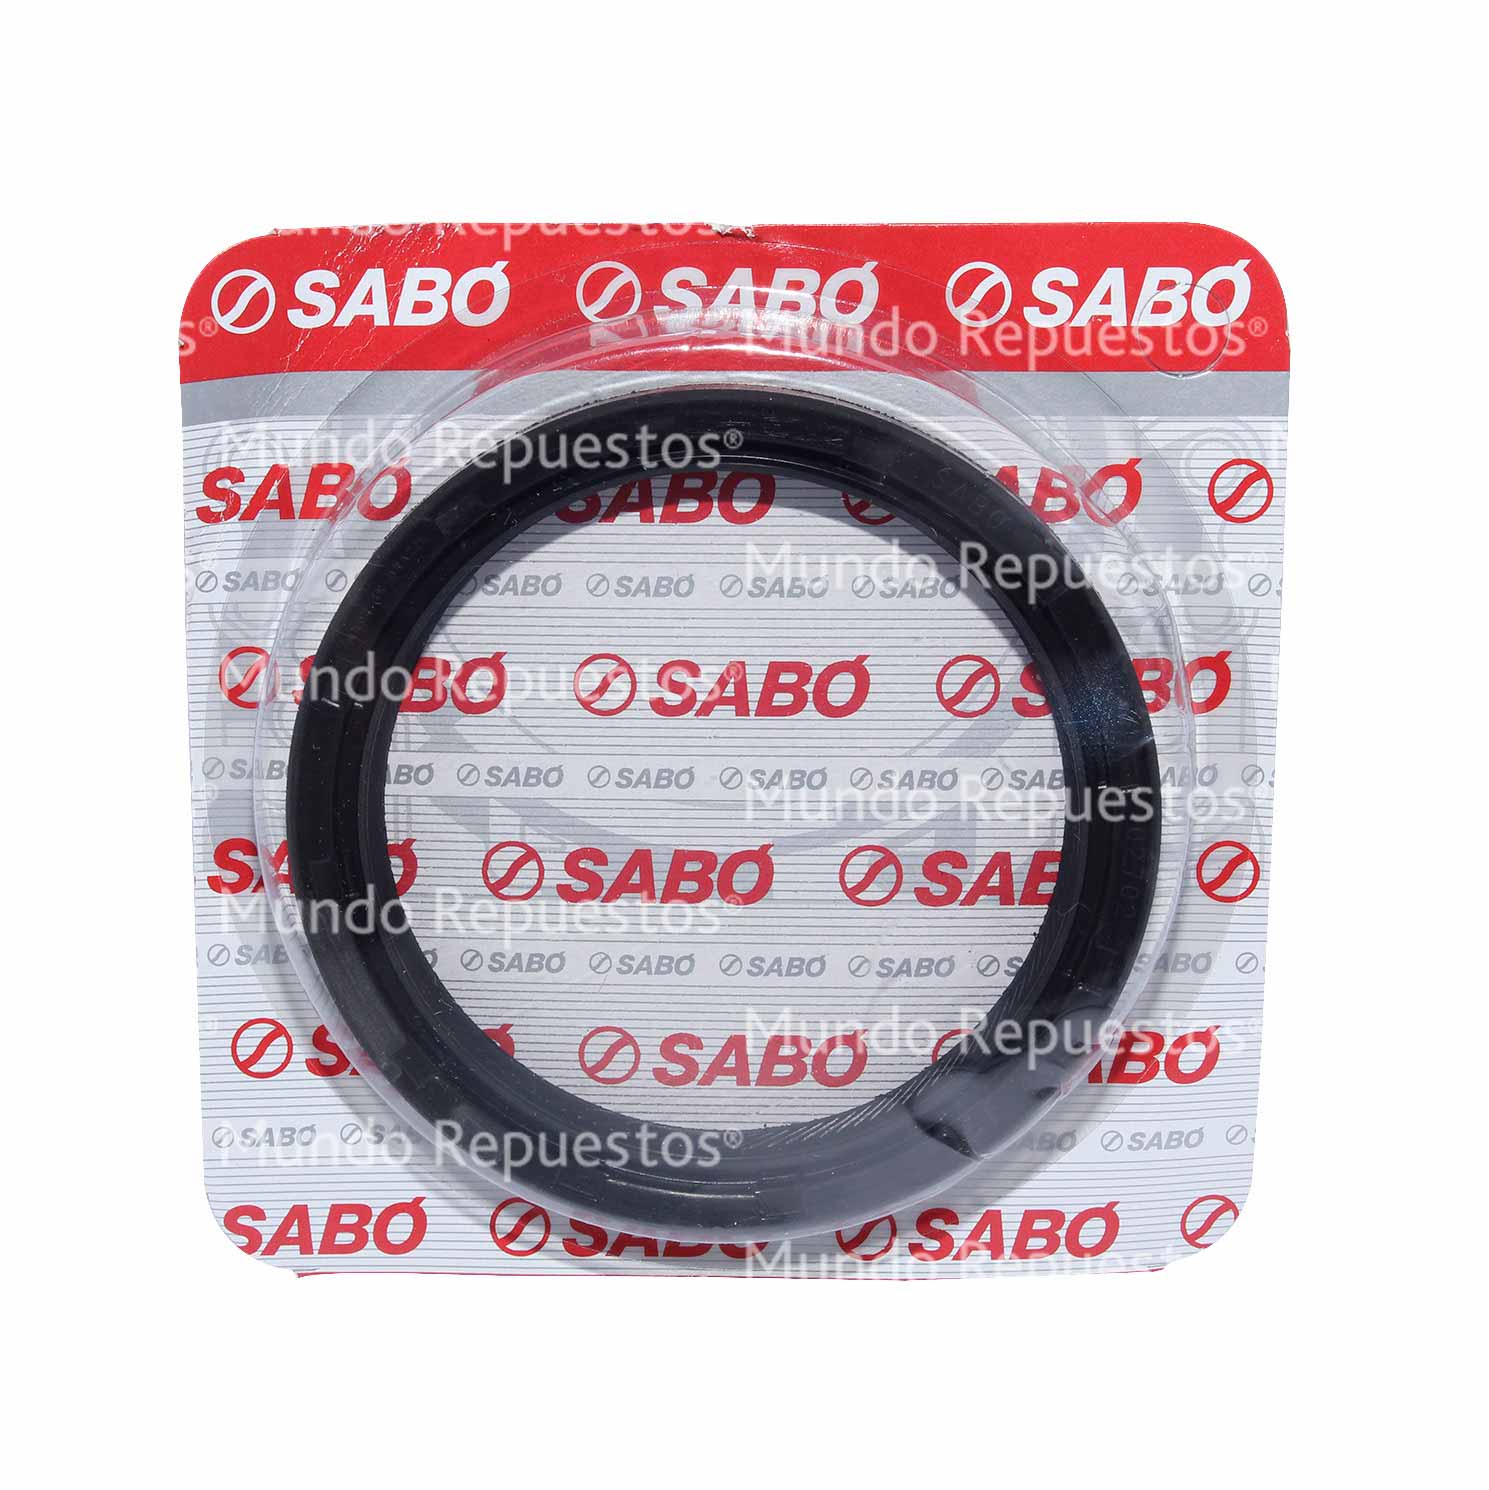 Reten marca Sabo disponible en Mundo Repuestos